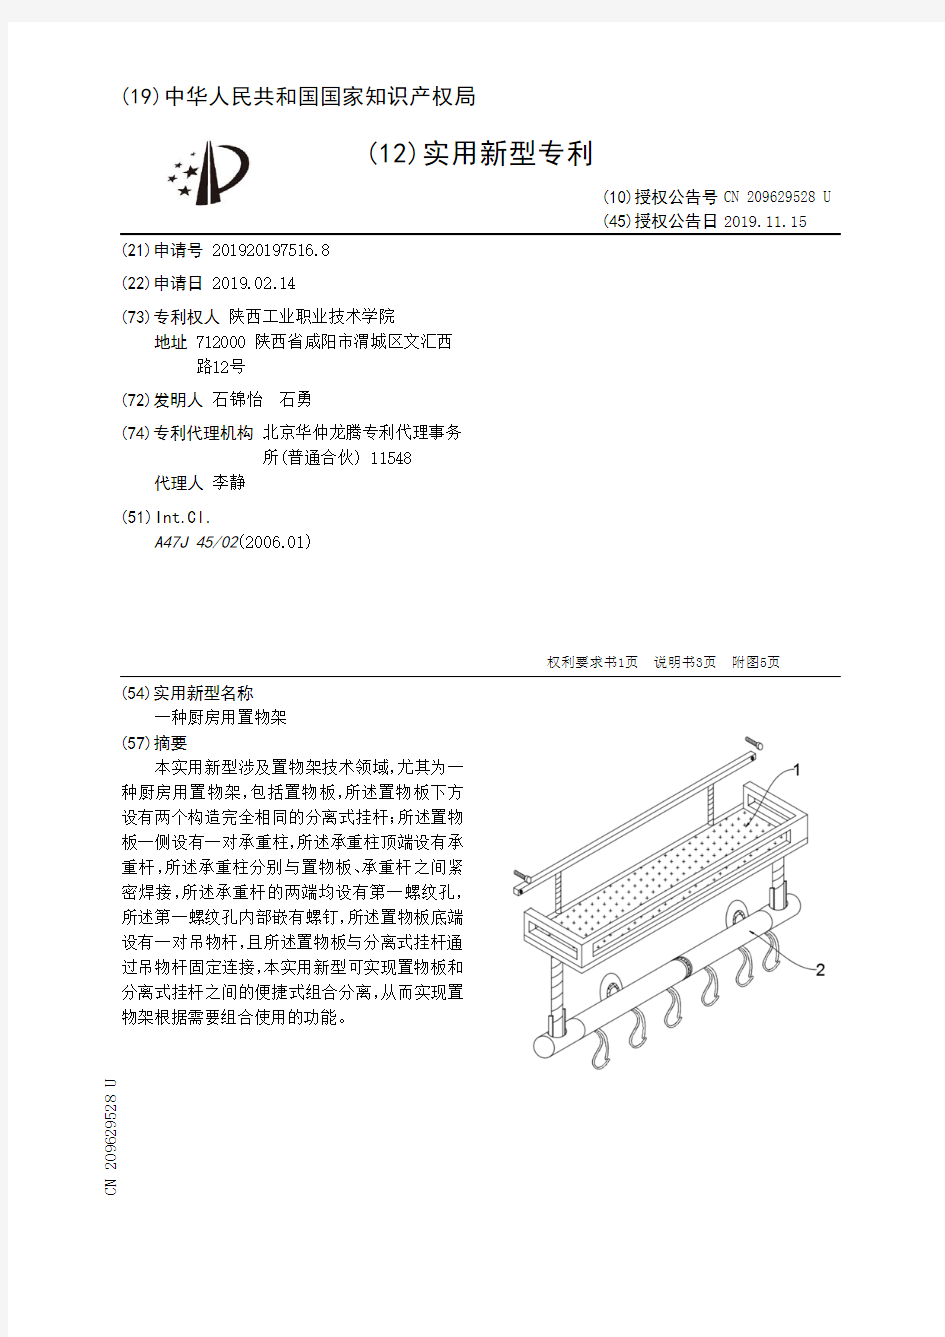 【CN209629528U】一种厨房用置物架【专利】